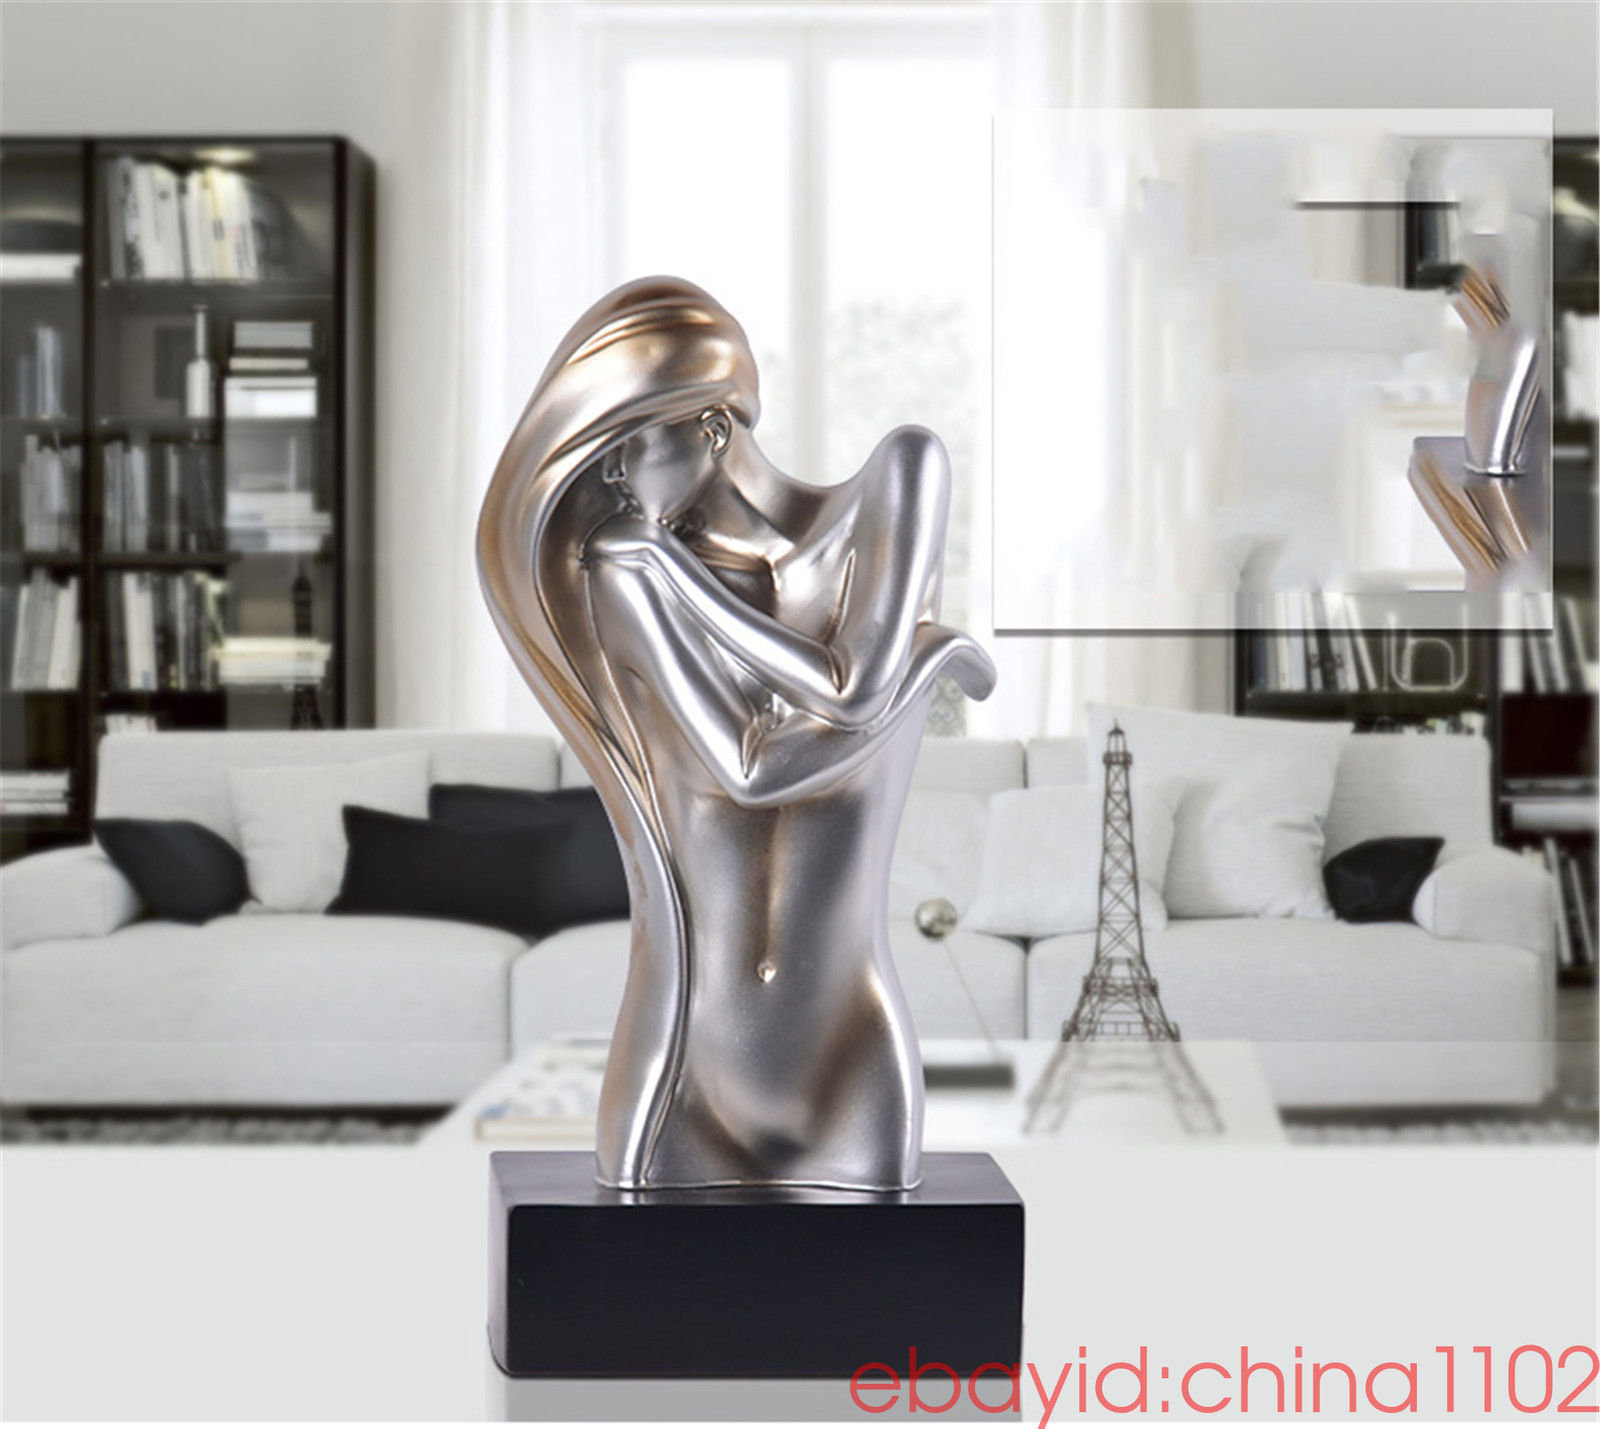 The human body art Sculpture Statue Abstract Modern Art Deco Modern decorative